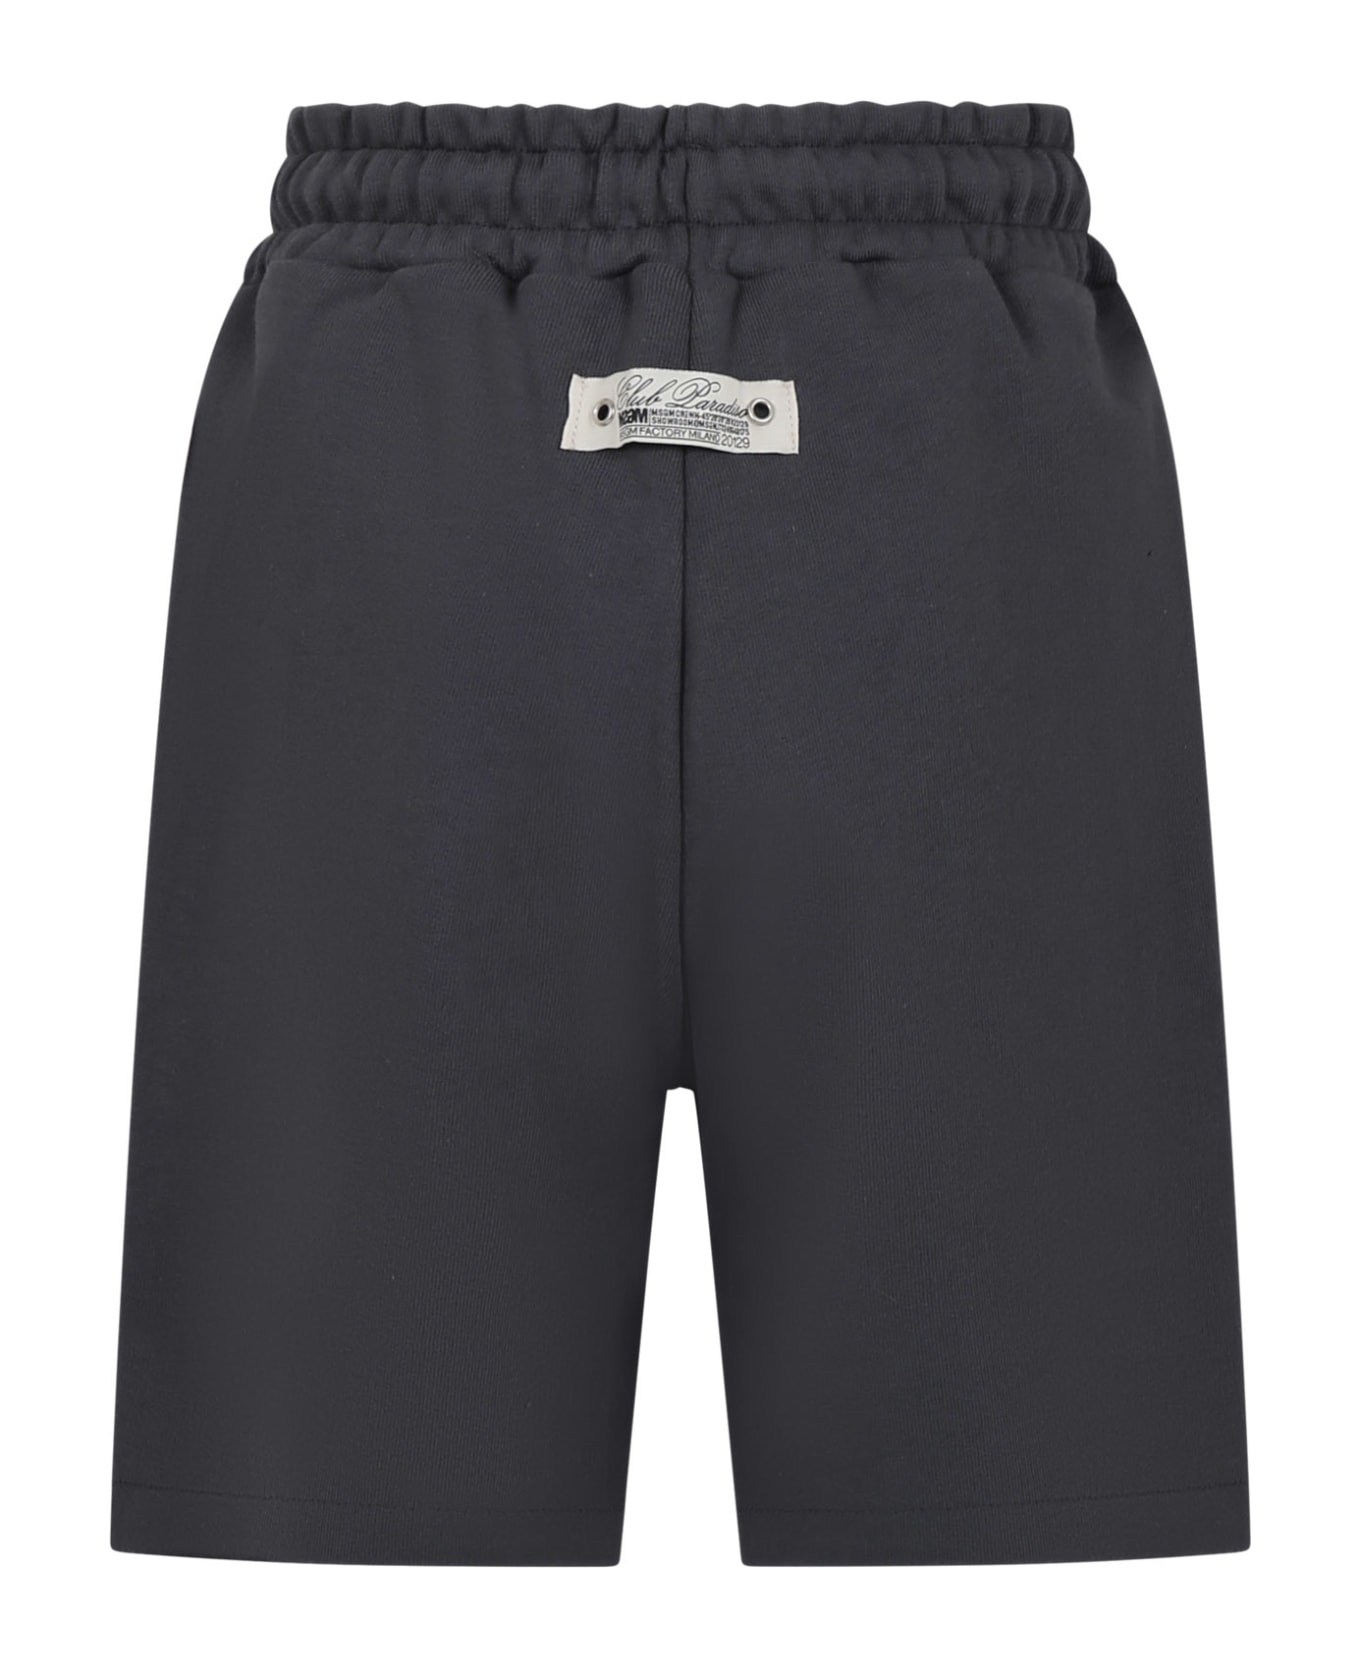 MSGM Grey Shorts For Boy With Logo - Grey